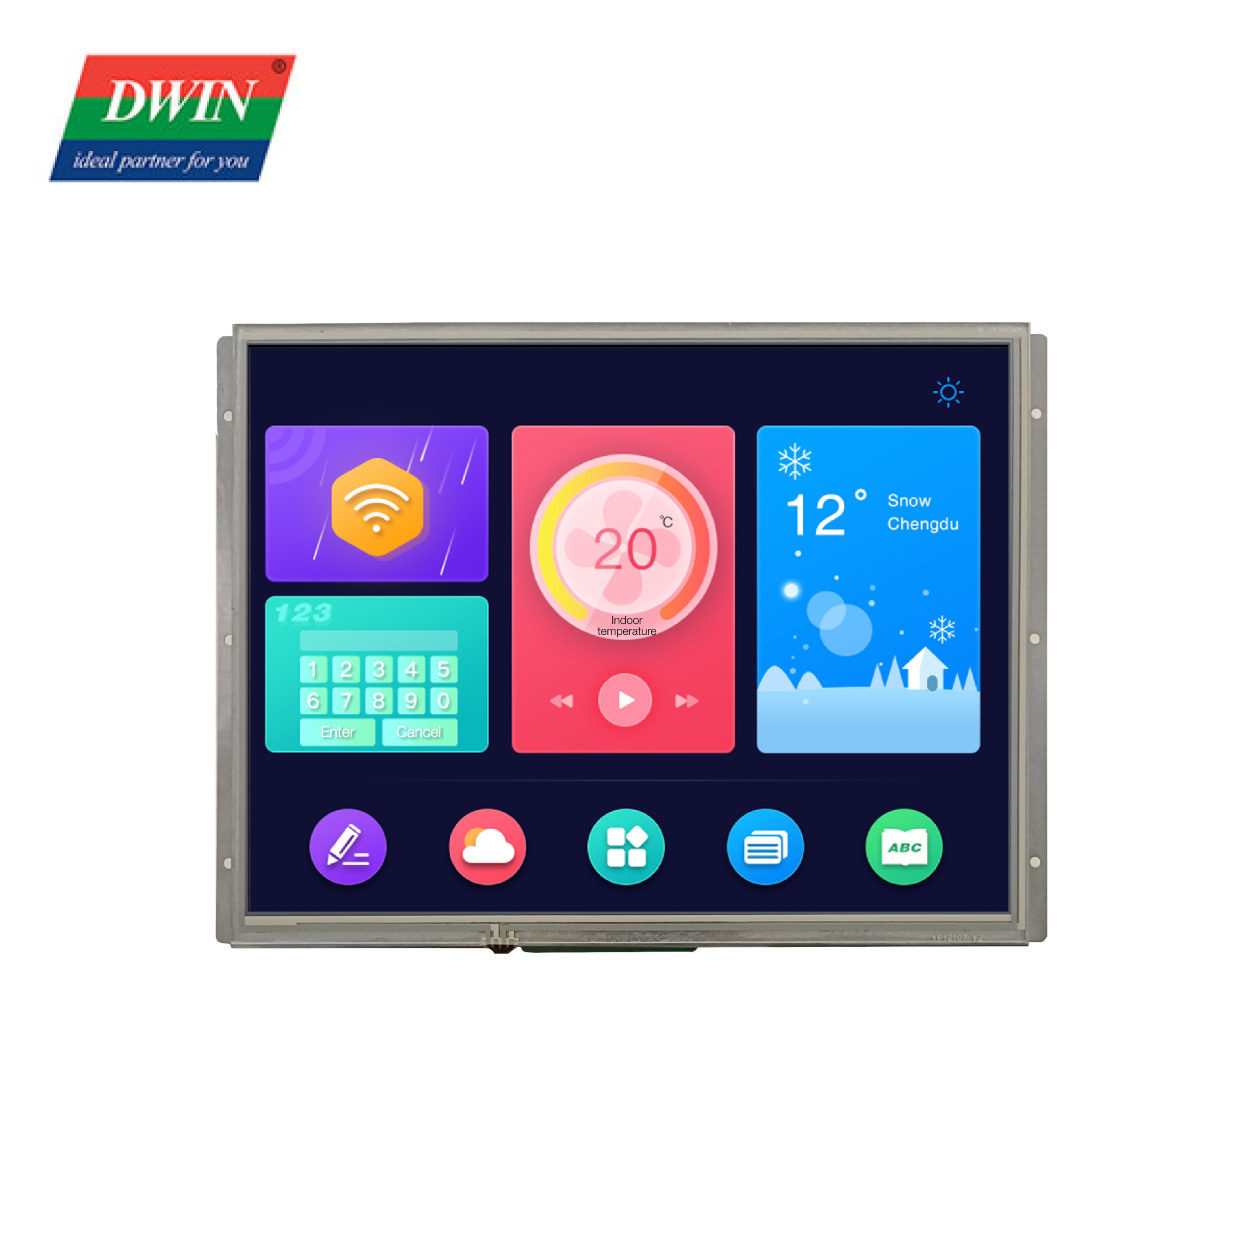 12.1 インチ HMI LCD スクリーン モデル: DMG80600Y121_02NR (美品グレード)